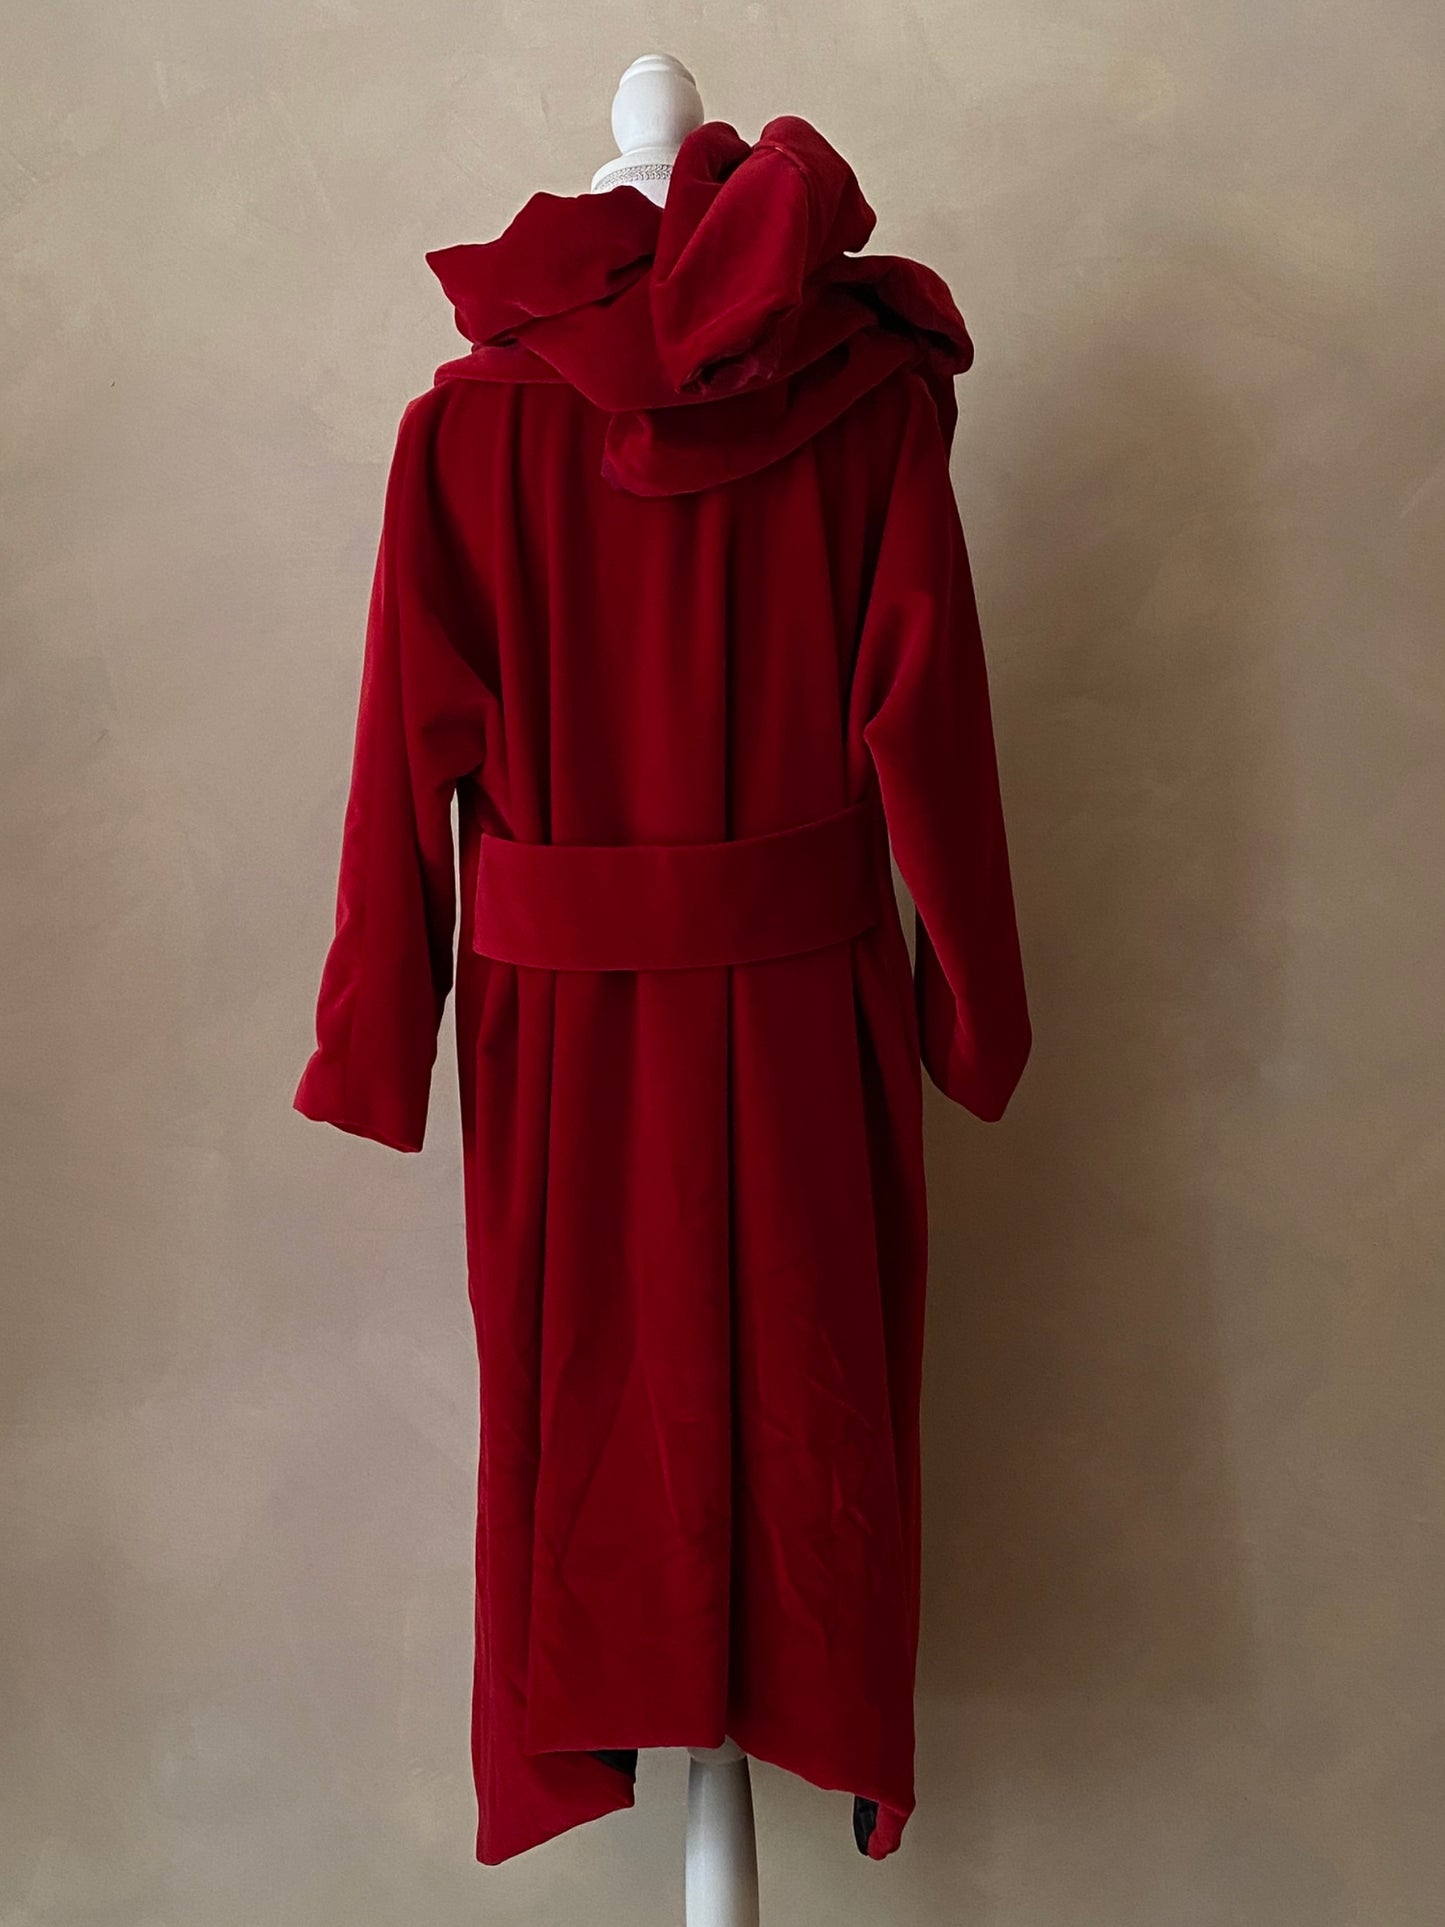 Red velvet coat